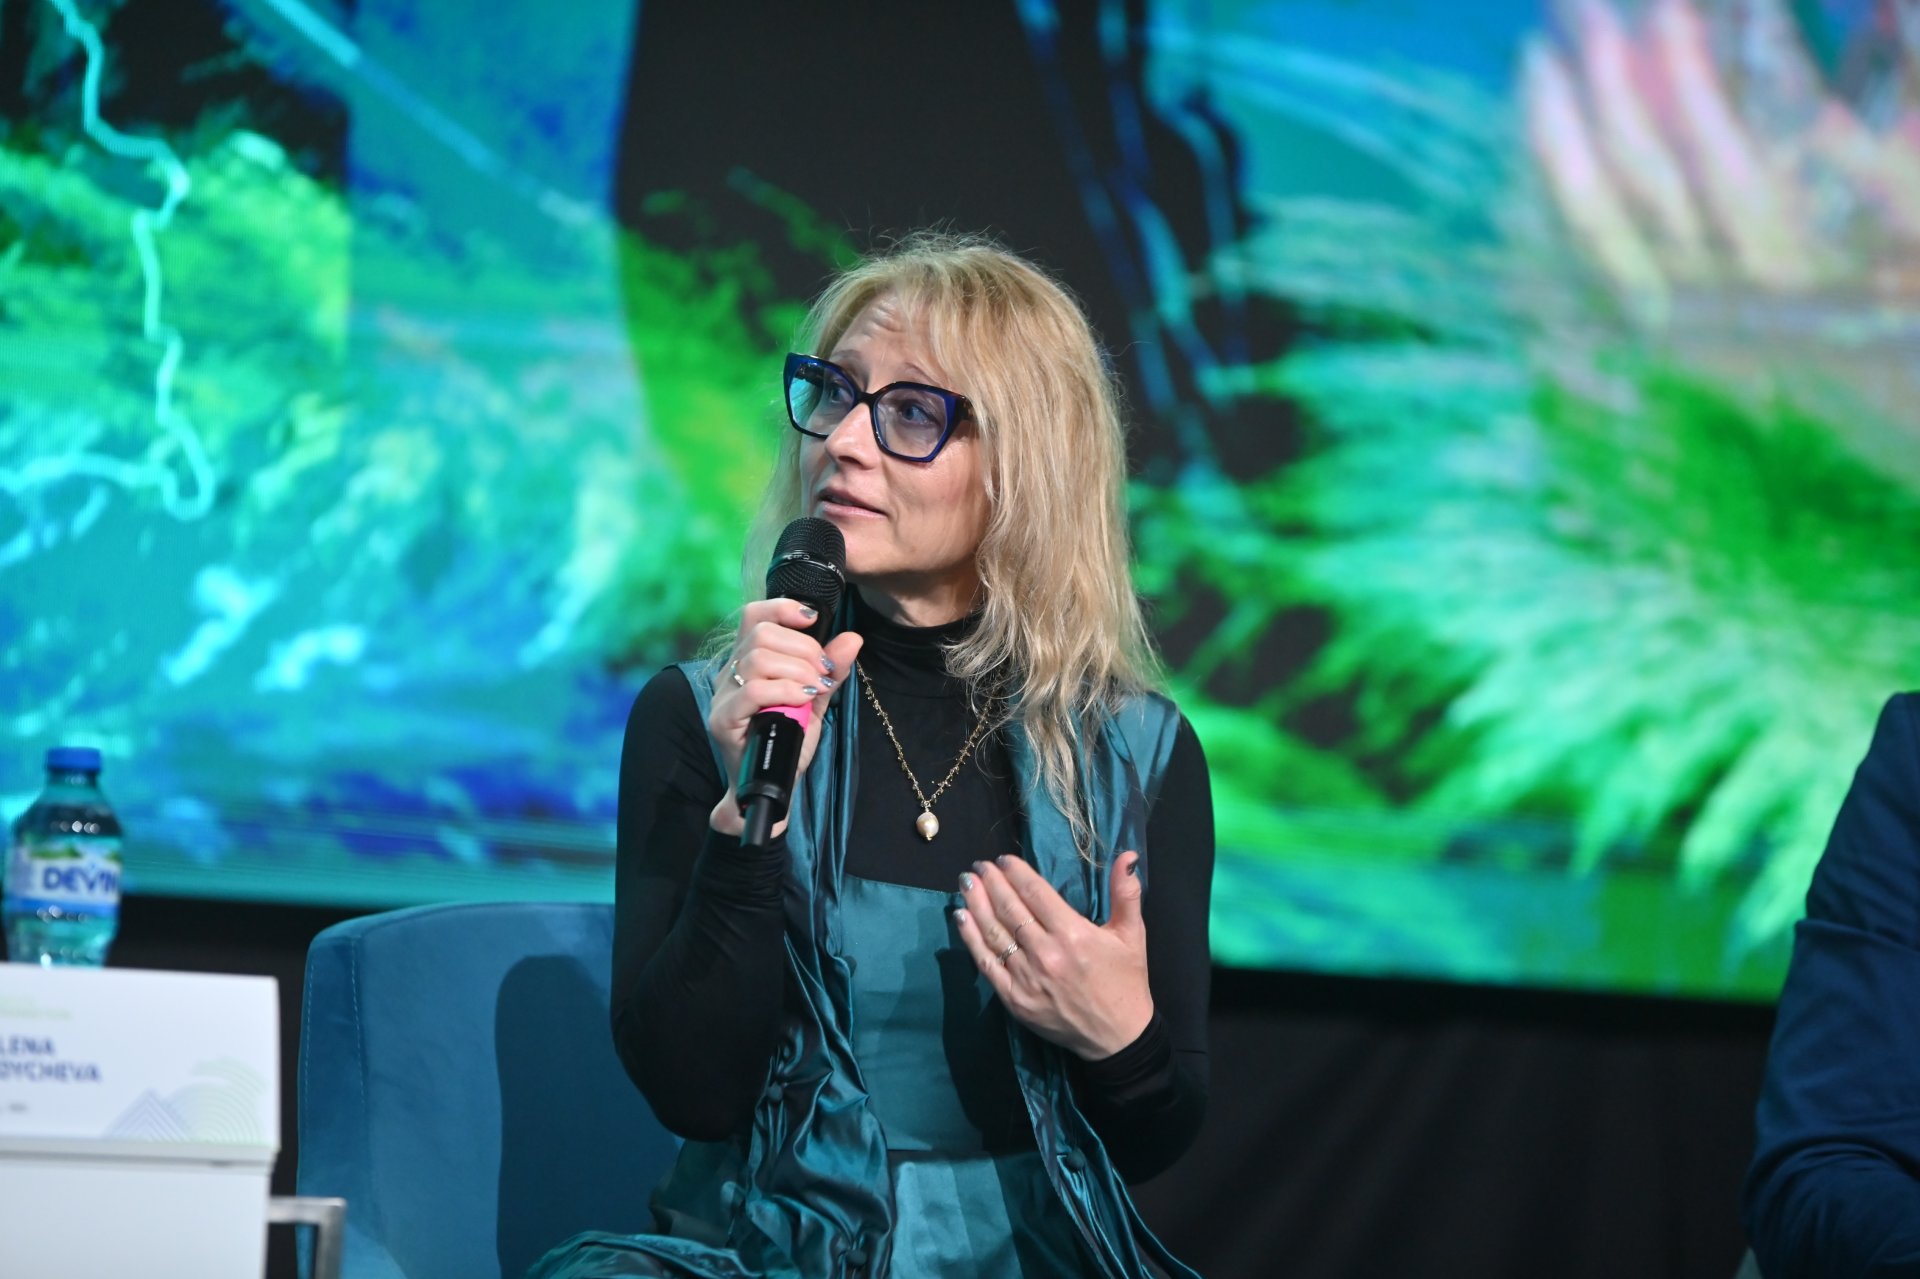 Милена Стойчева, главен изпълнителен директор на "Джуниър Ачийвмънт" - България